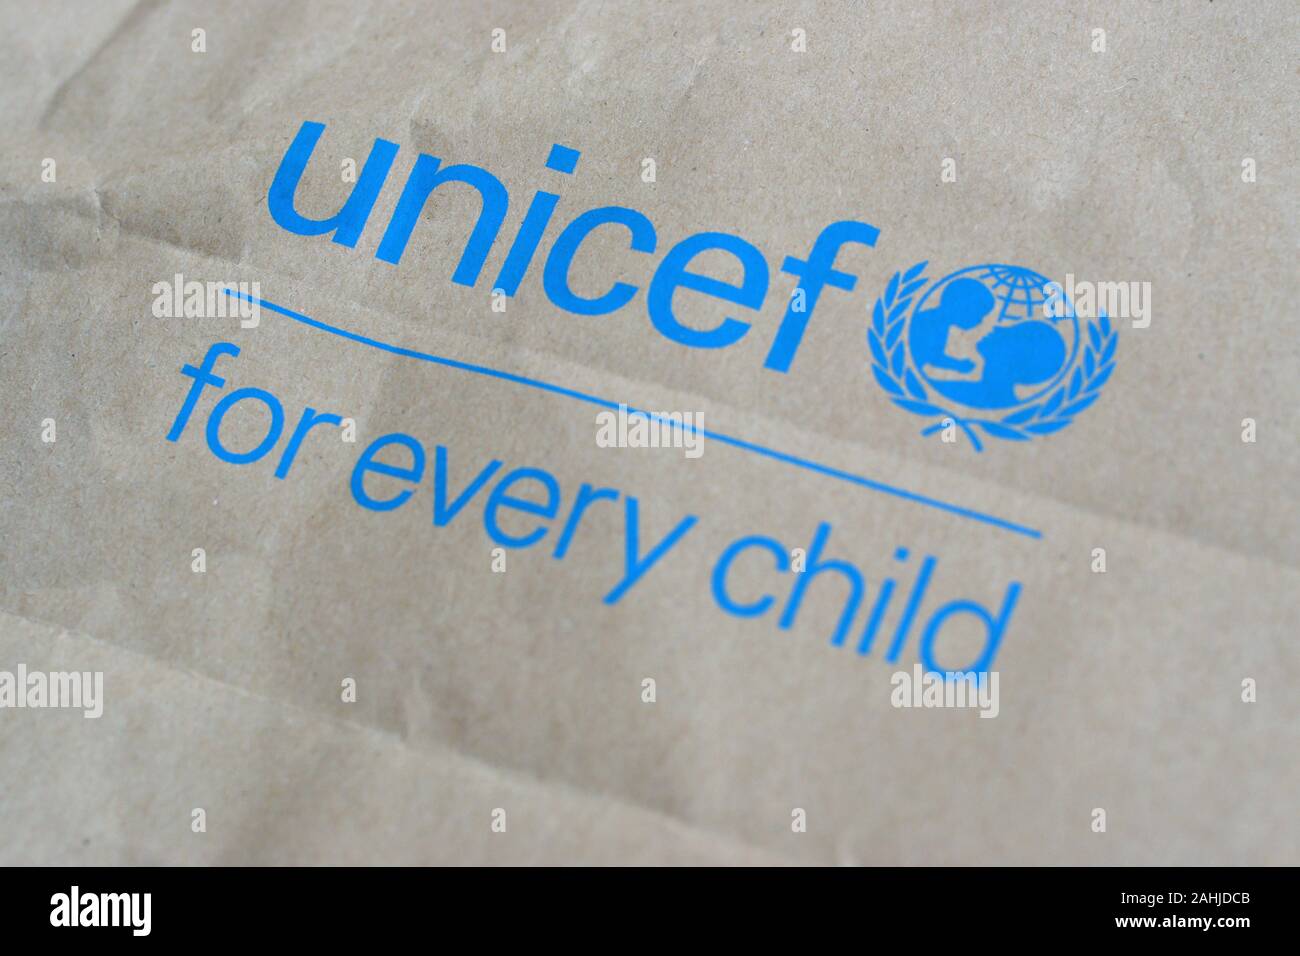 NY, USA - 29 décembre 2019 : l'Unicef logo bleu sur sac en papier brun, l'Organisation des Nations Unies pour l'enfance est chargé de fournir de l'aide humanitaire et d Banque D'Images